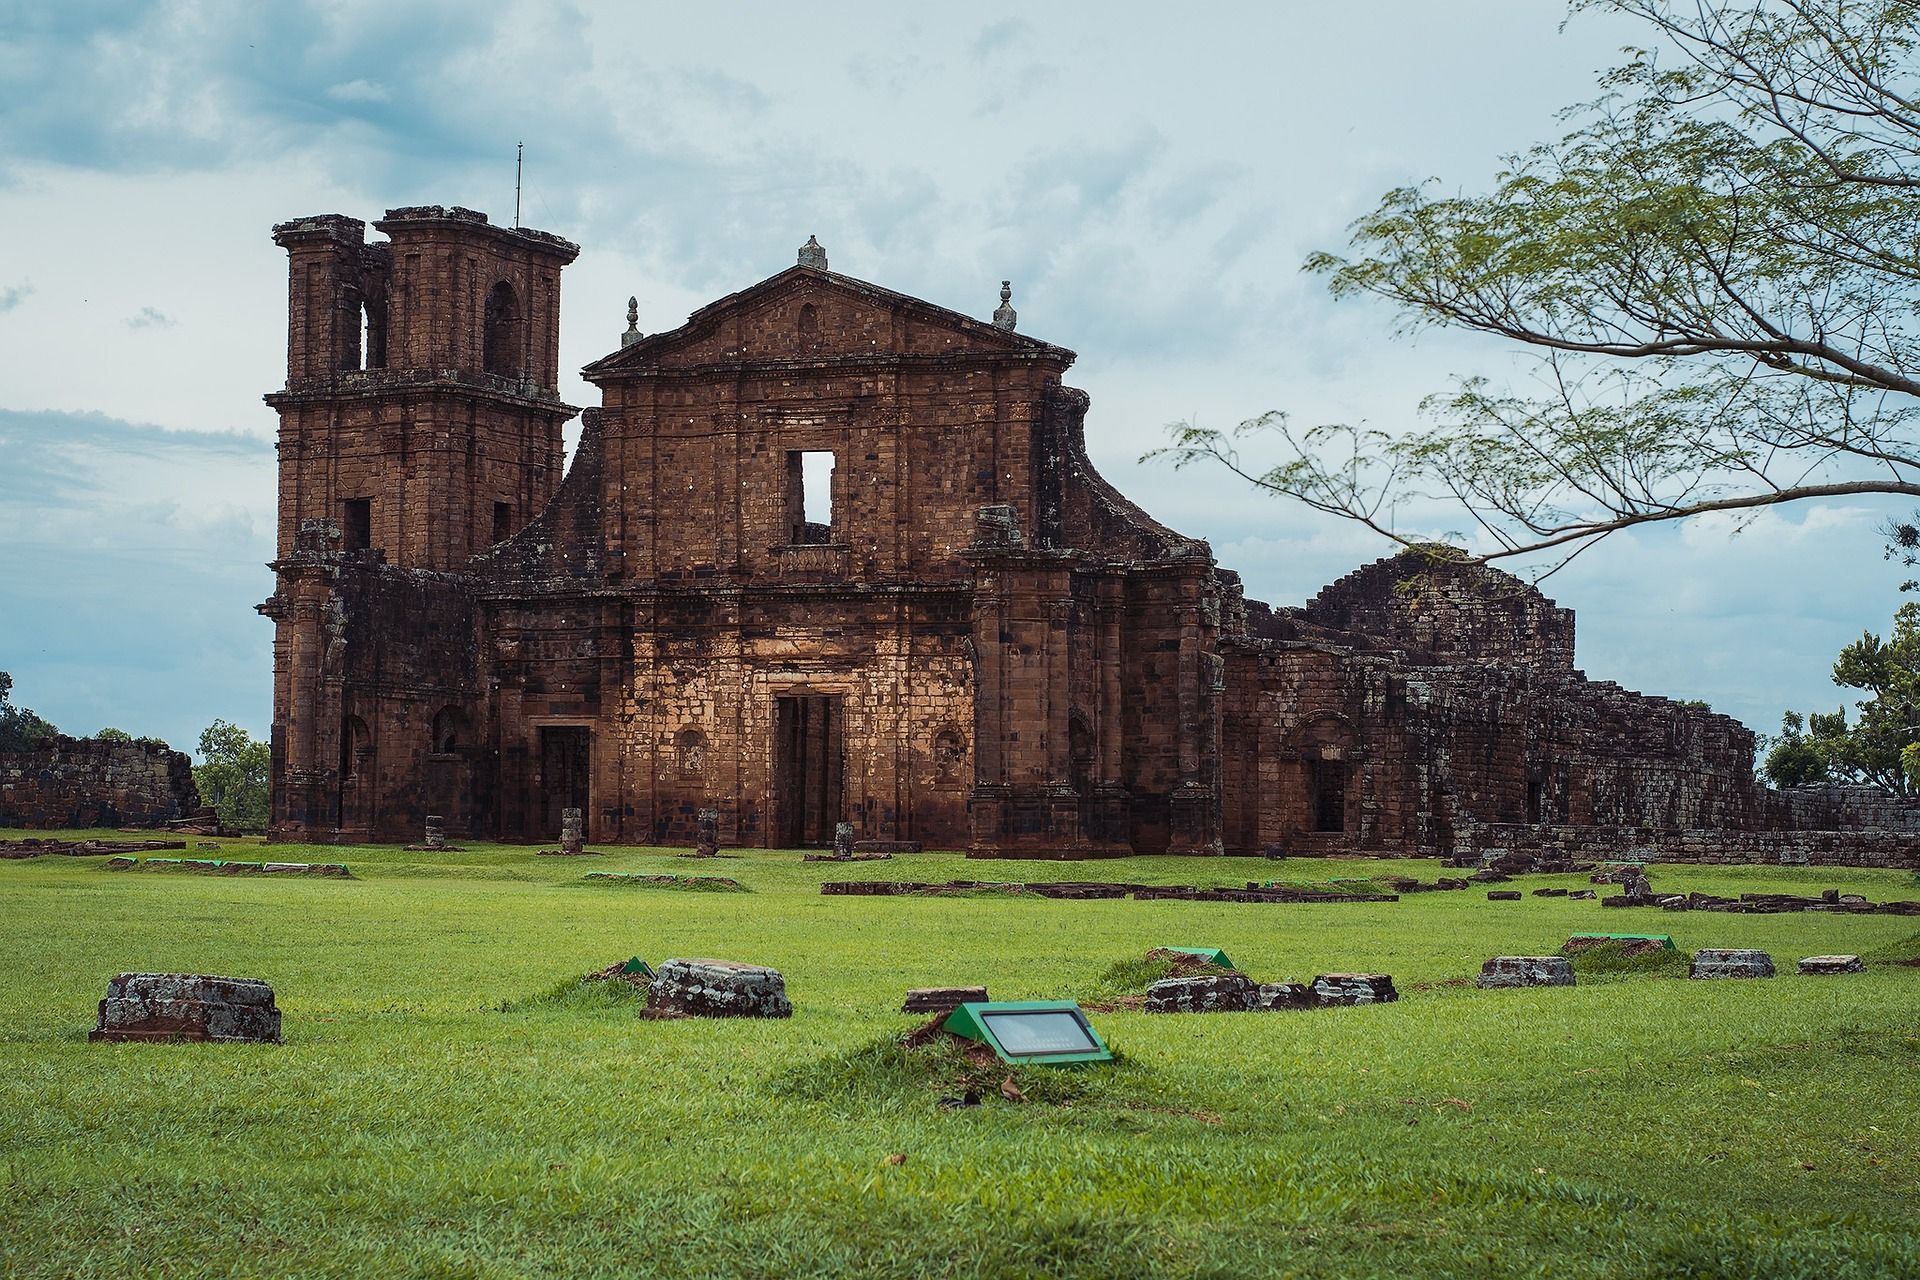 Au Brésil, ancienne église de mission jésuite en ruine - Image par maxicarre de https://pixabay.com/fr/photos/missions-j%c3%a9suites-des-j%c3%a9suites-2437957/